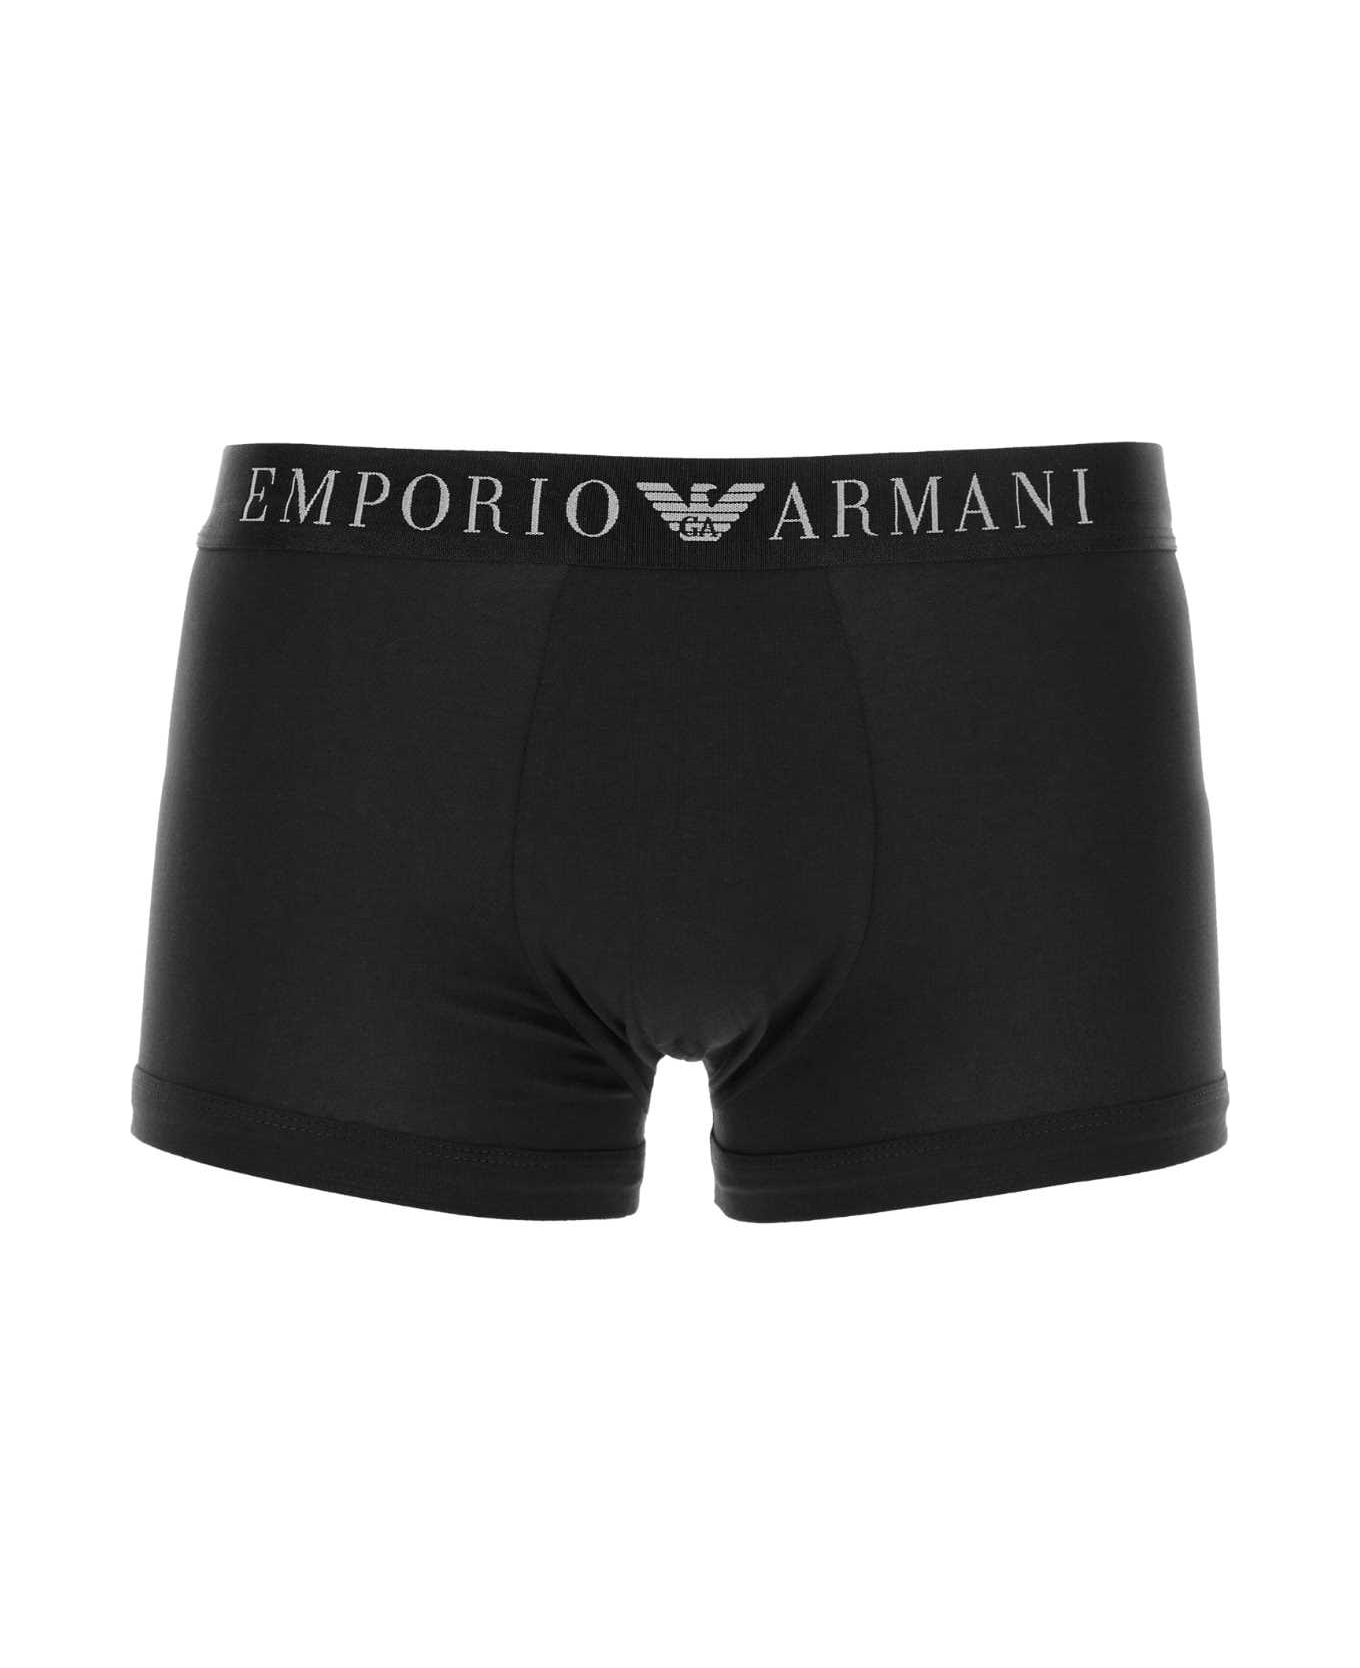 Emporio Armani Black Stretch Cotton Boxer - 00020